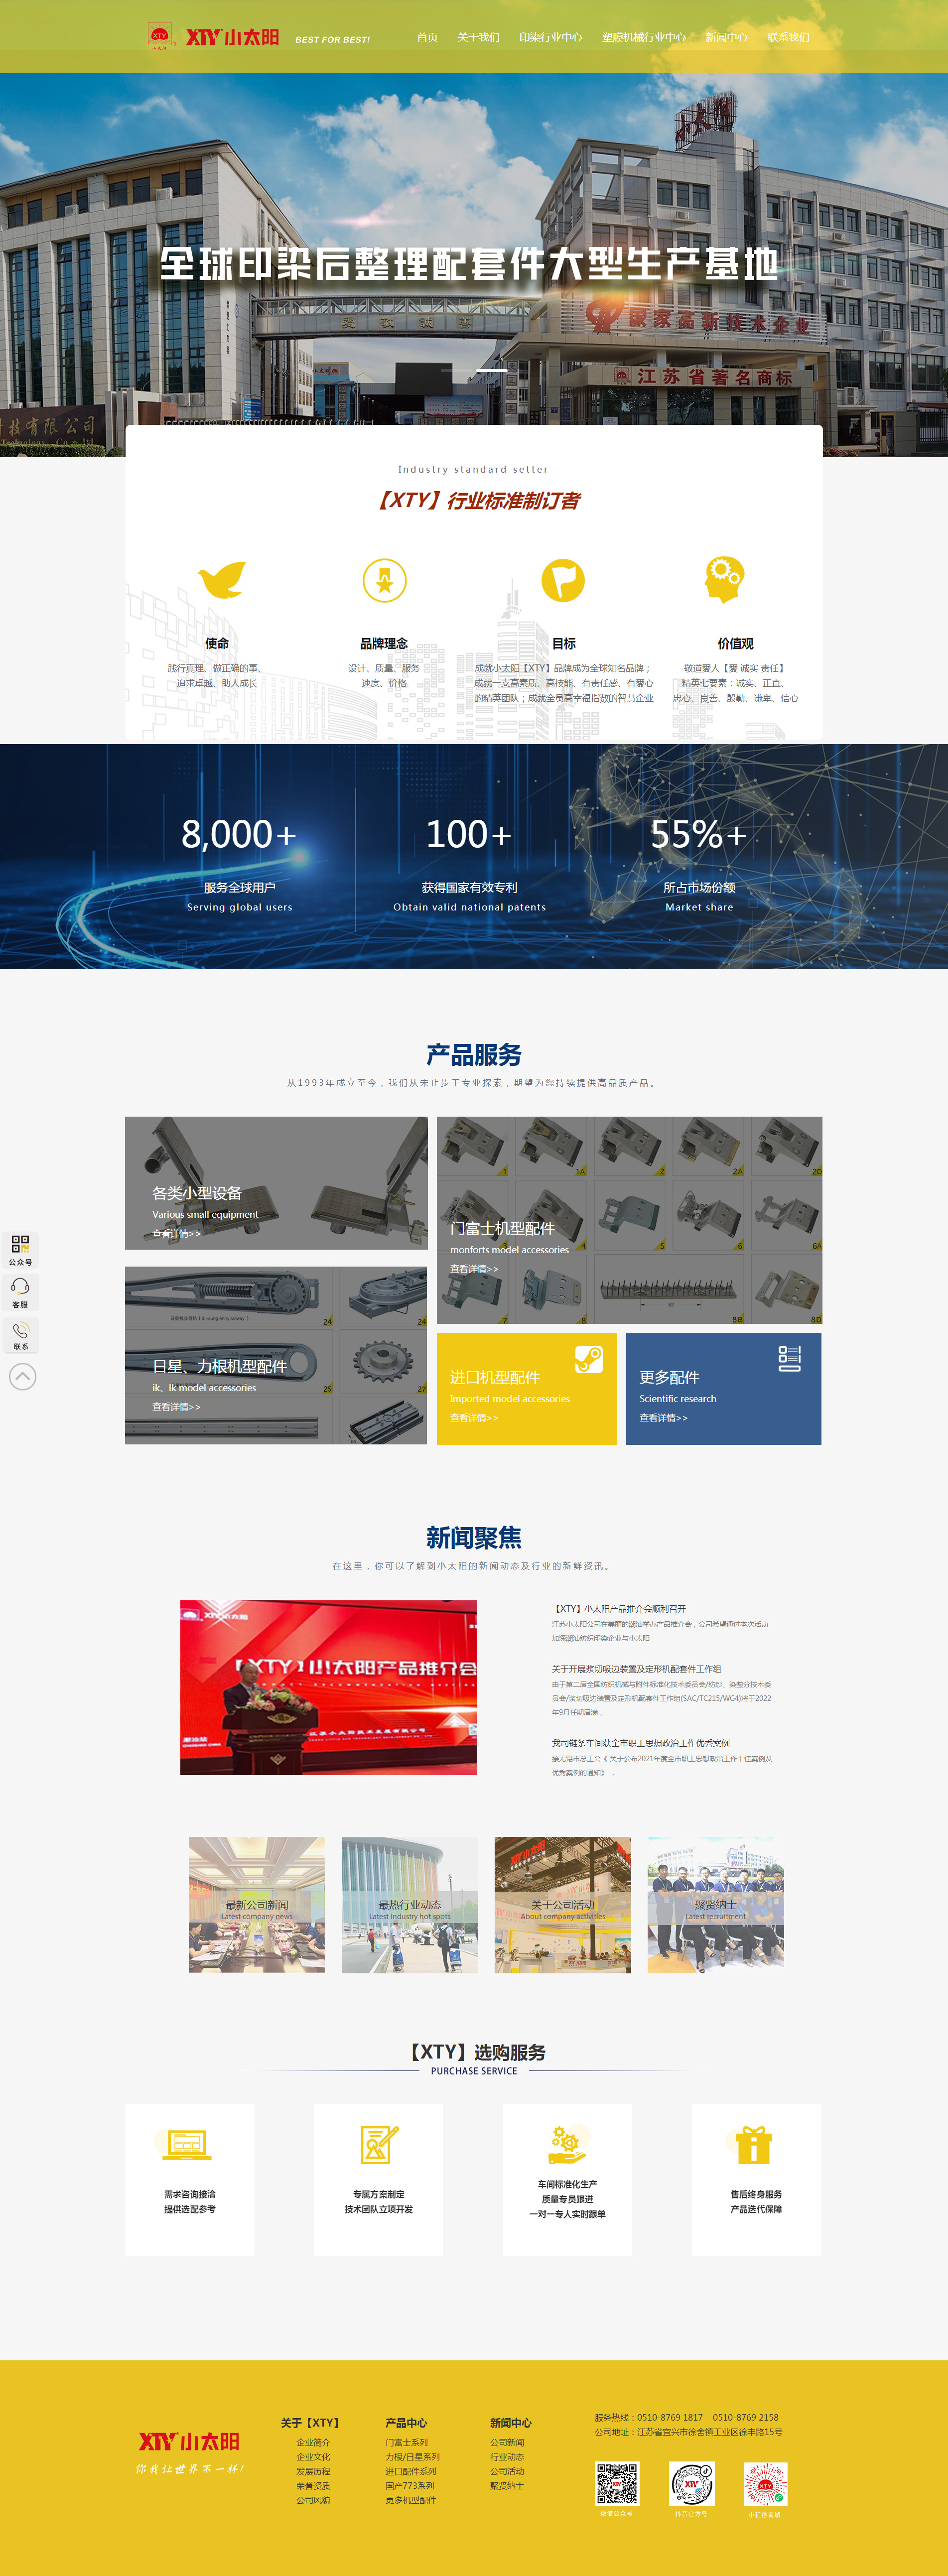 江苏小太阳机械科技网站制作首页设计效果图